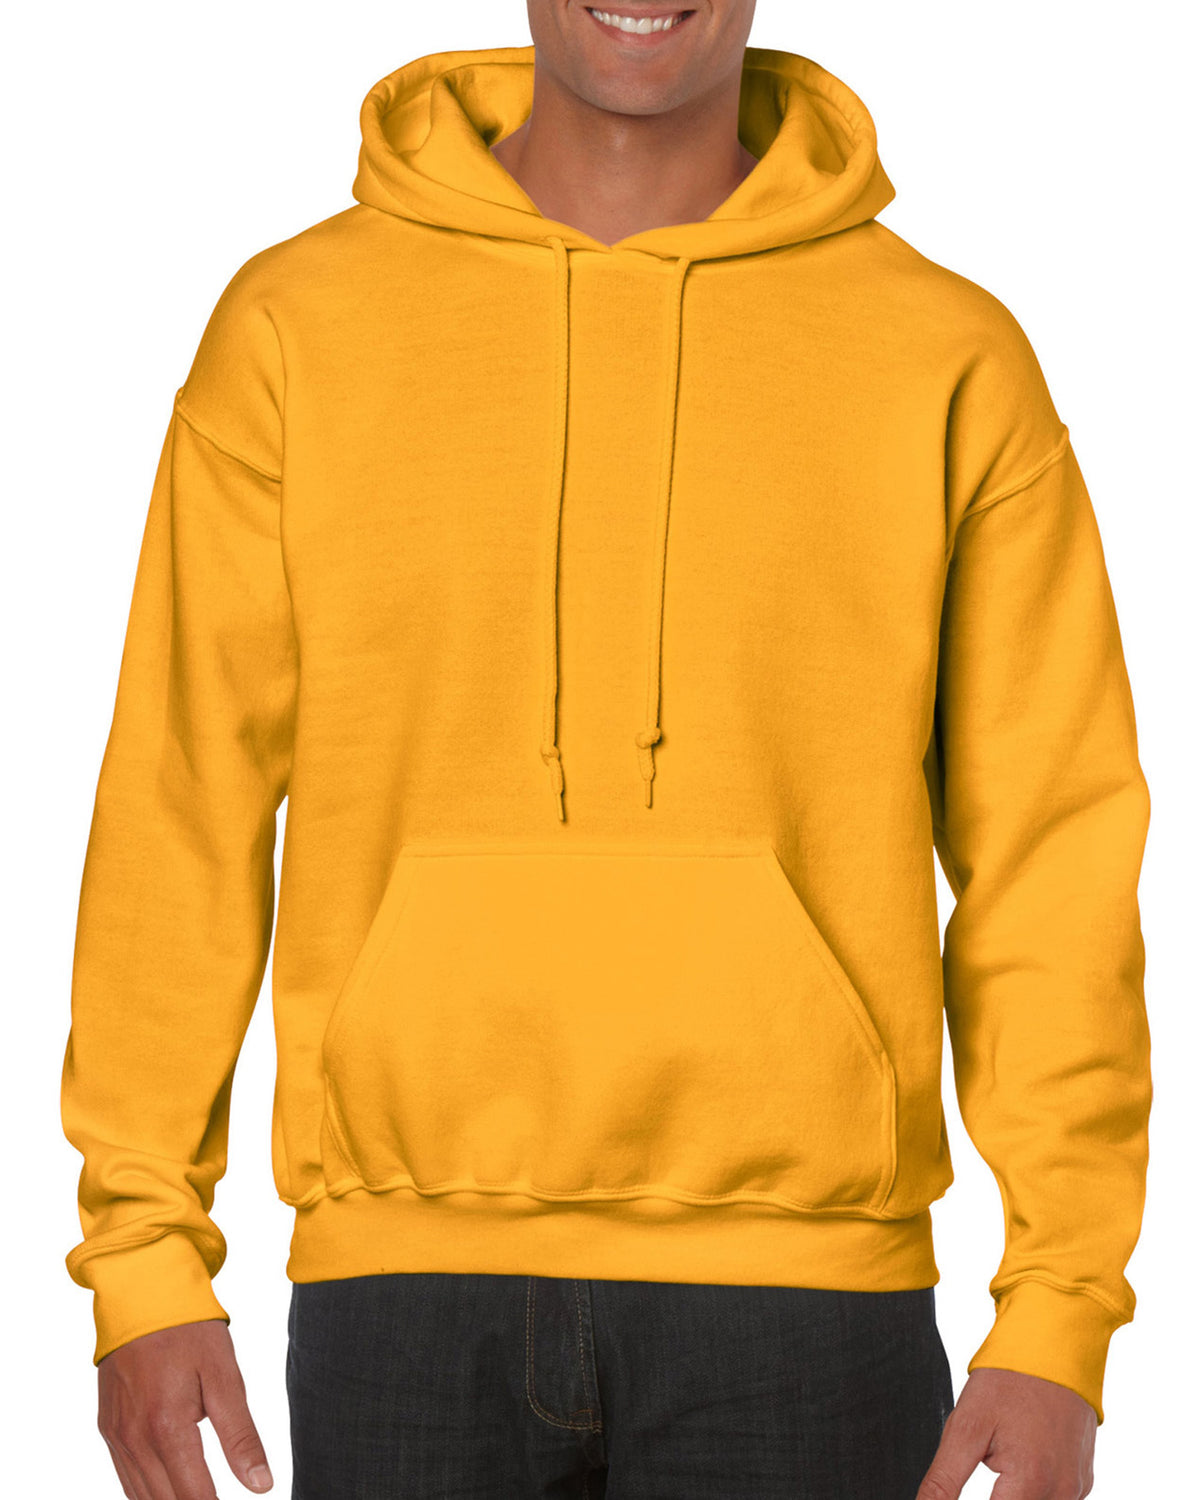 Mens Adult Gildan Heavy Blend Hoodie Hooded Plain Colour Sweatshirt Top